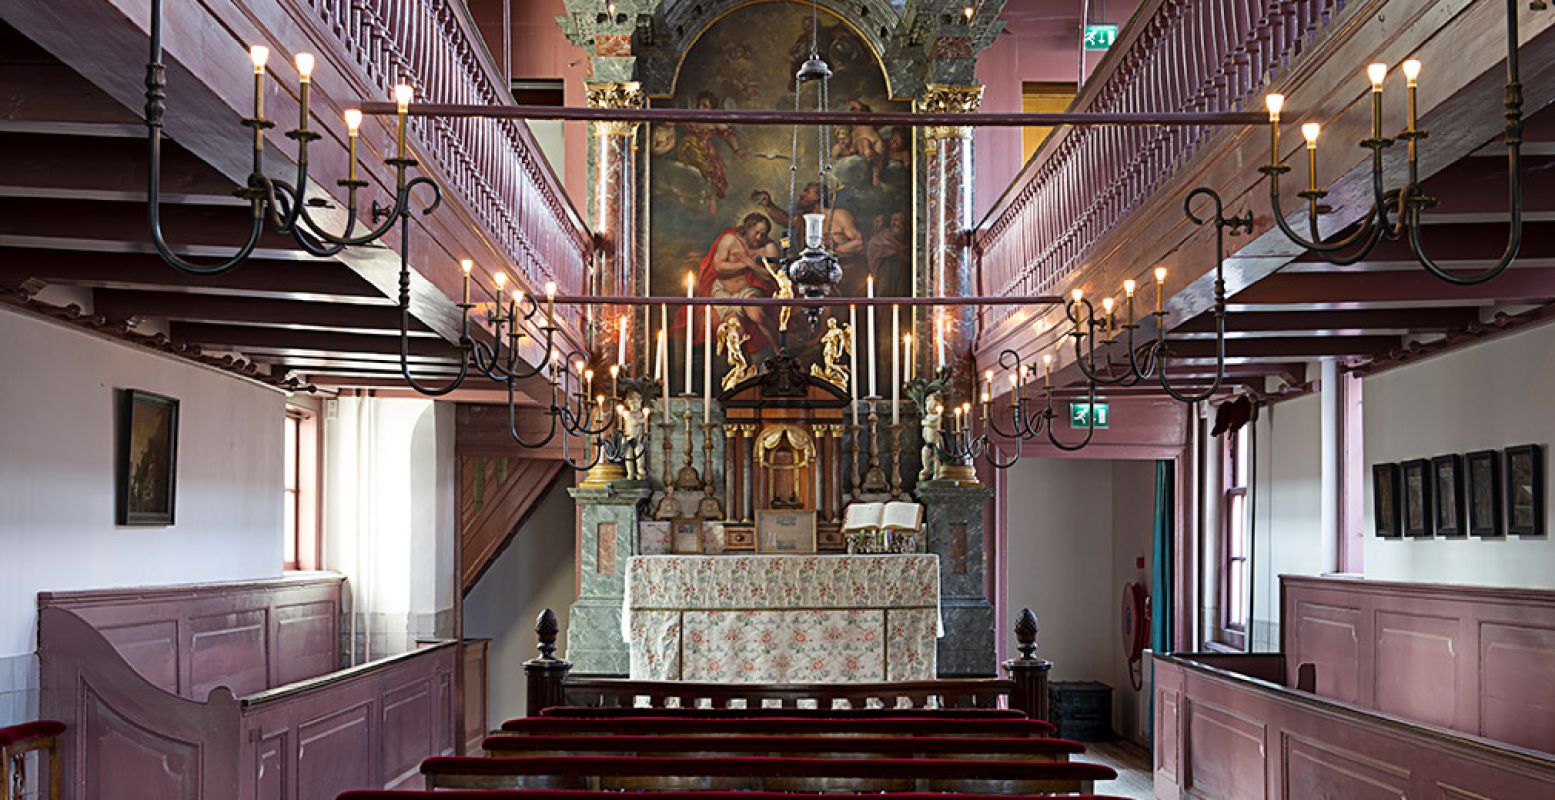 De prachtige huiskerk in Ons' Lieve Heer op Solder. Foto: Ons' Lieve Heer op Solder © Arjan Bronkhorst.